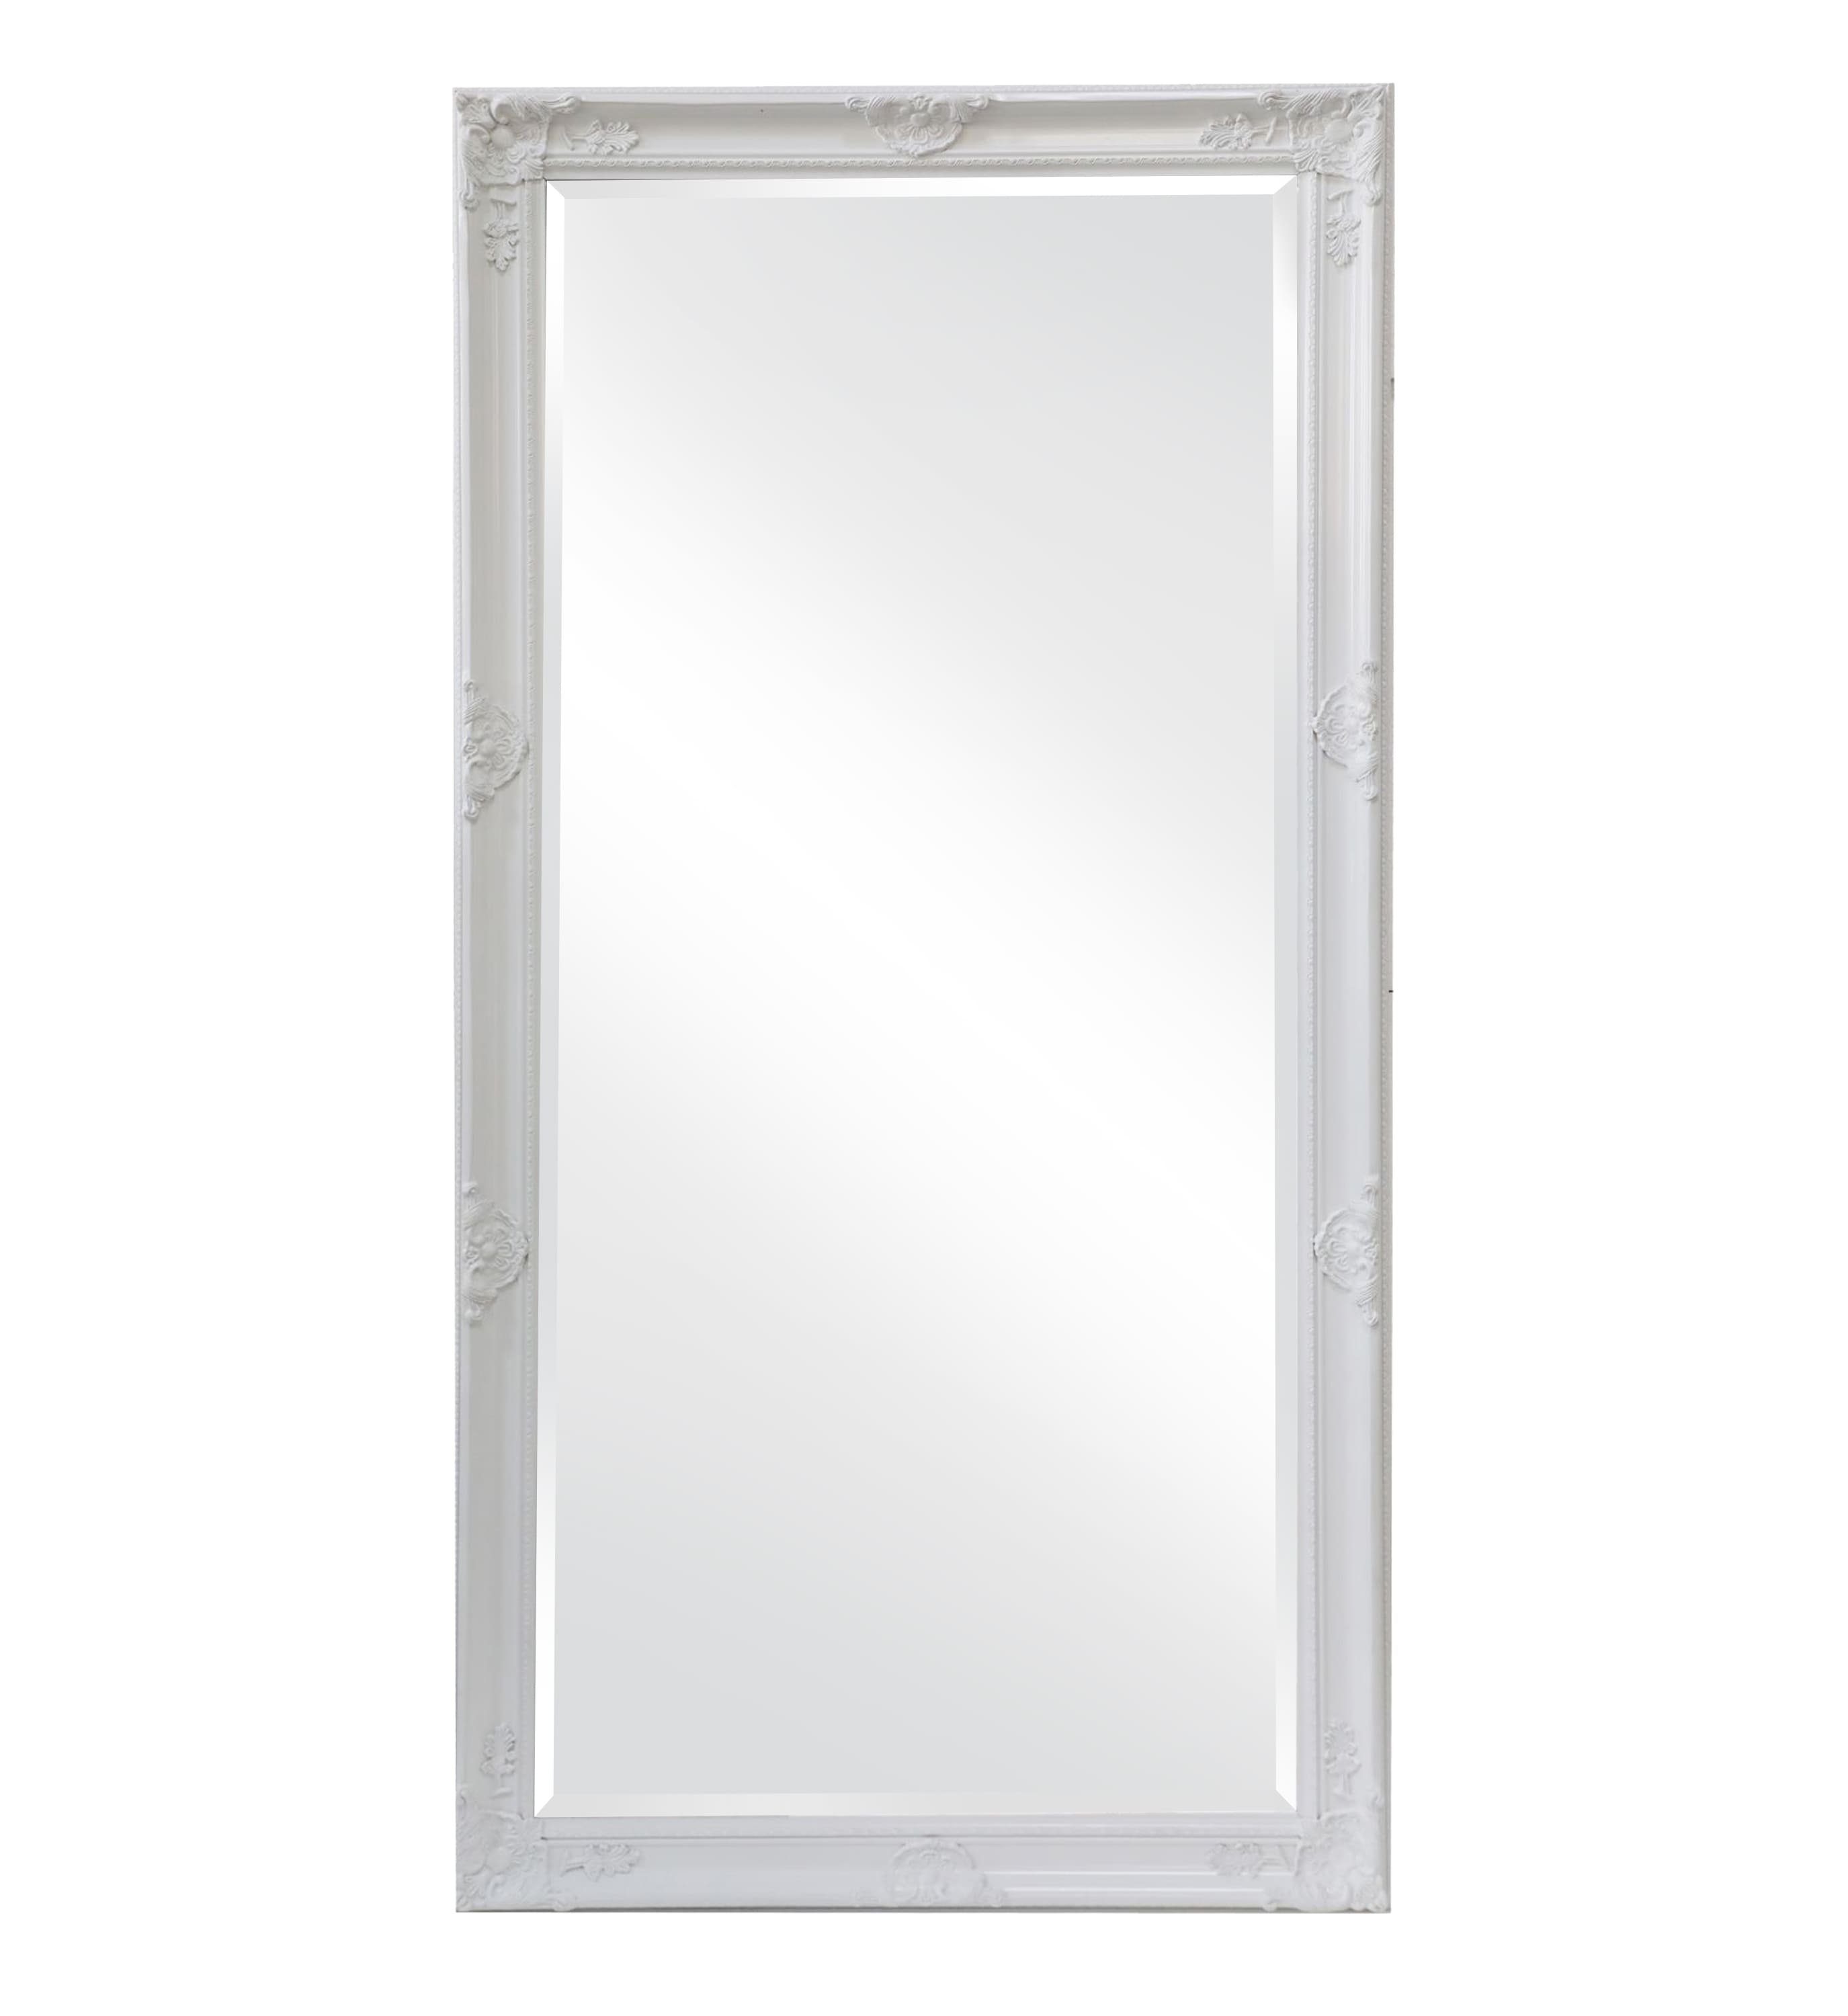 Spiegel LC 180x80 Weiß Antik-Stil LC ca. Barock XL Ganzkörperspiegel Home cm Wandspiegel Spiegel Home